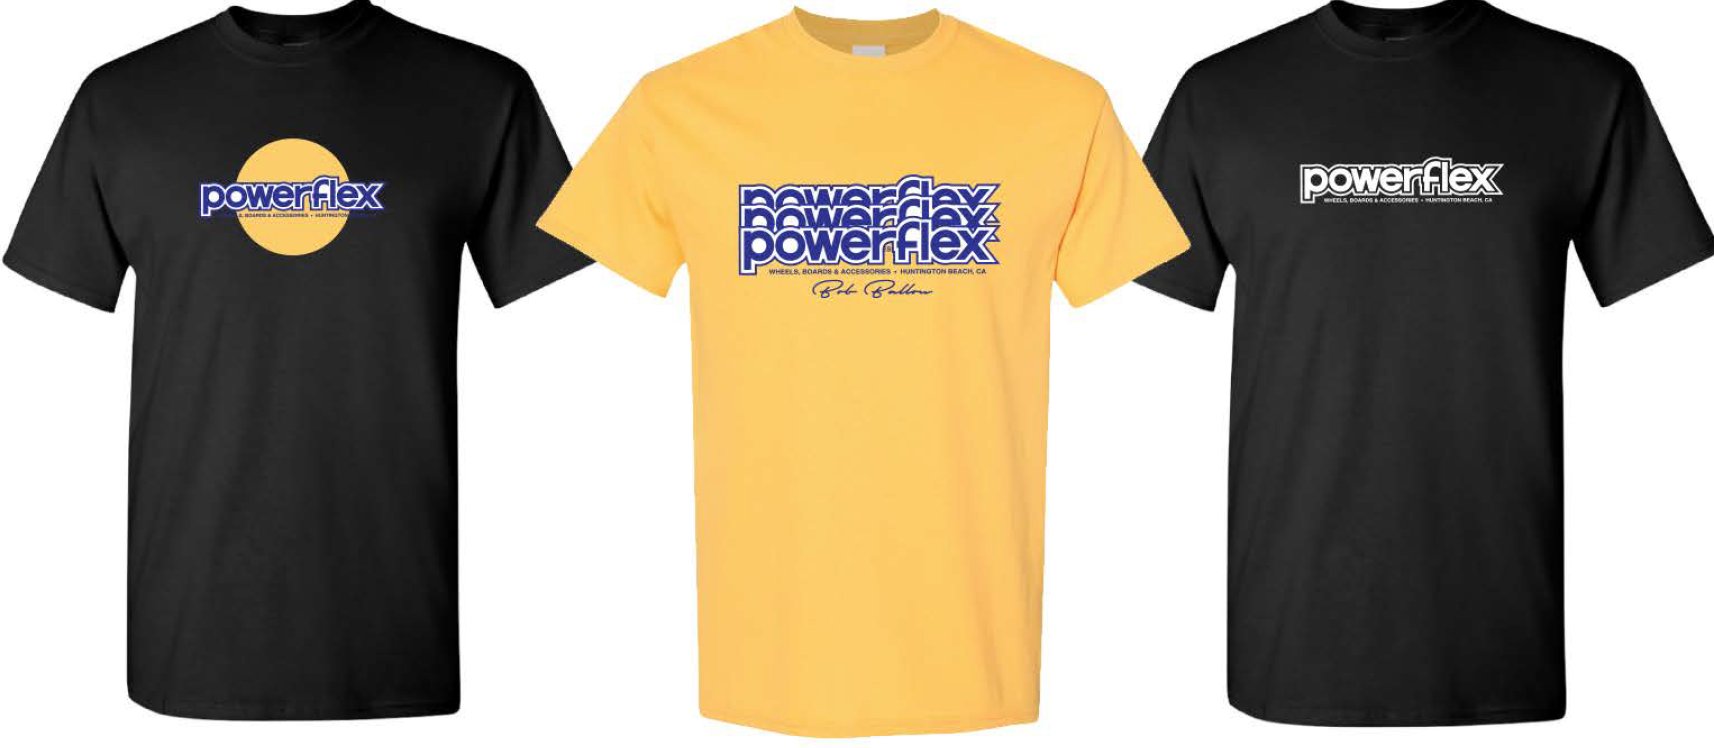 Powerflex Clothing